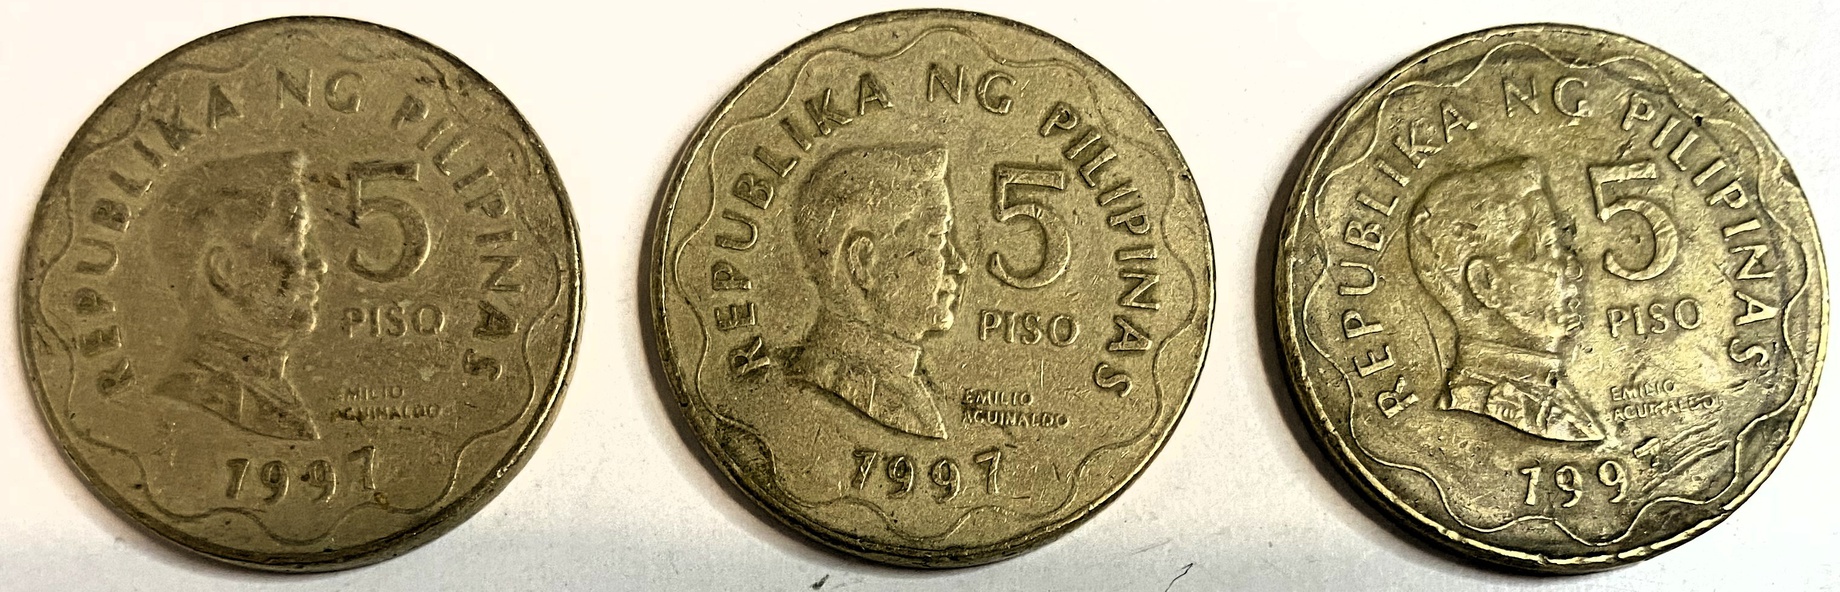 Иностранная монета Филиппины 5 писо 1997 год